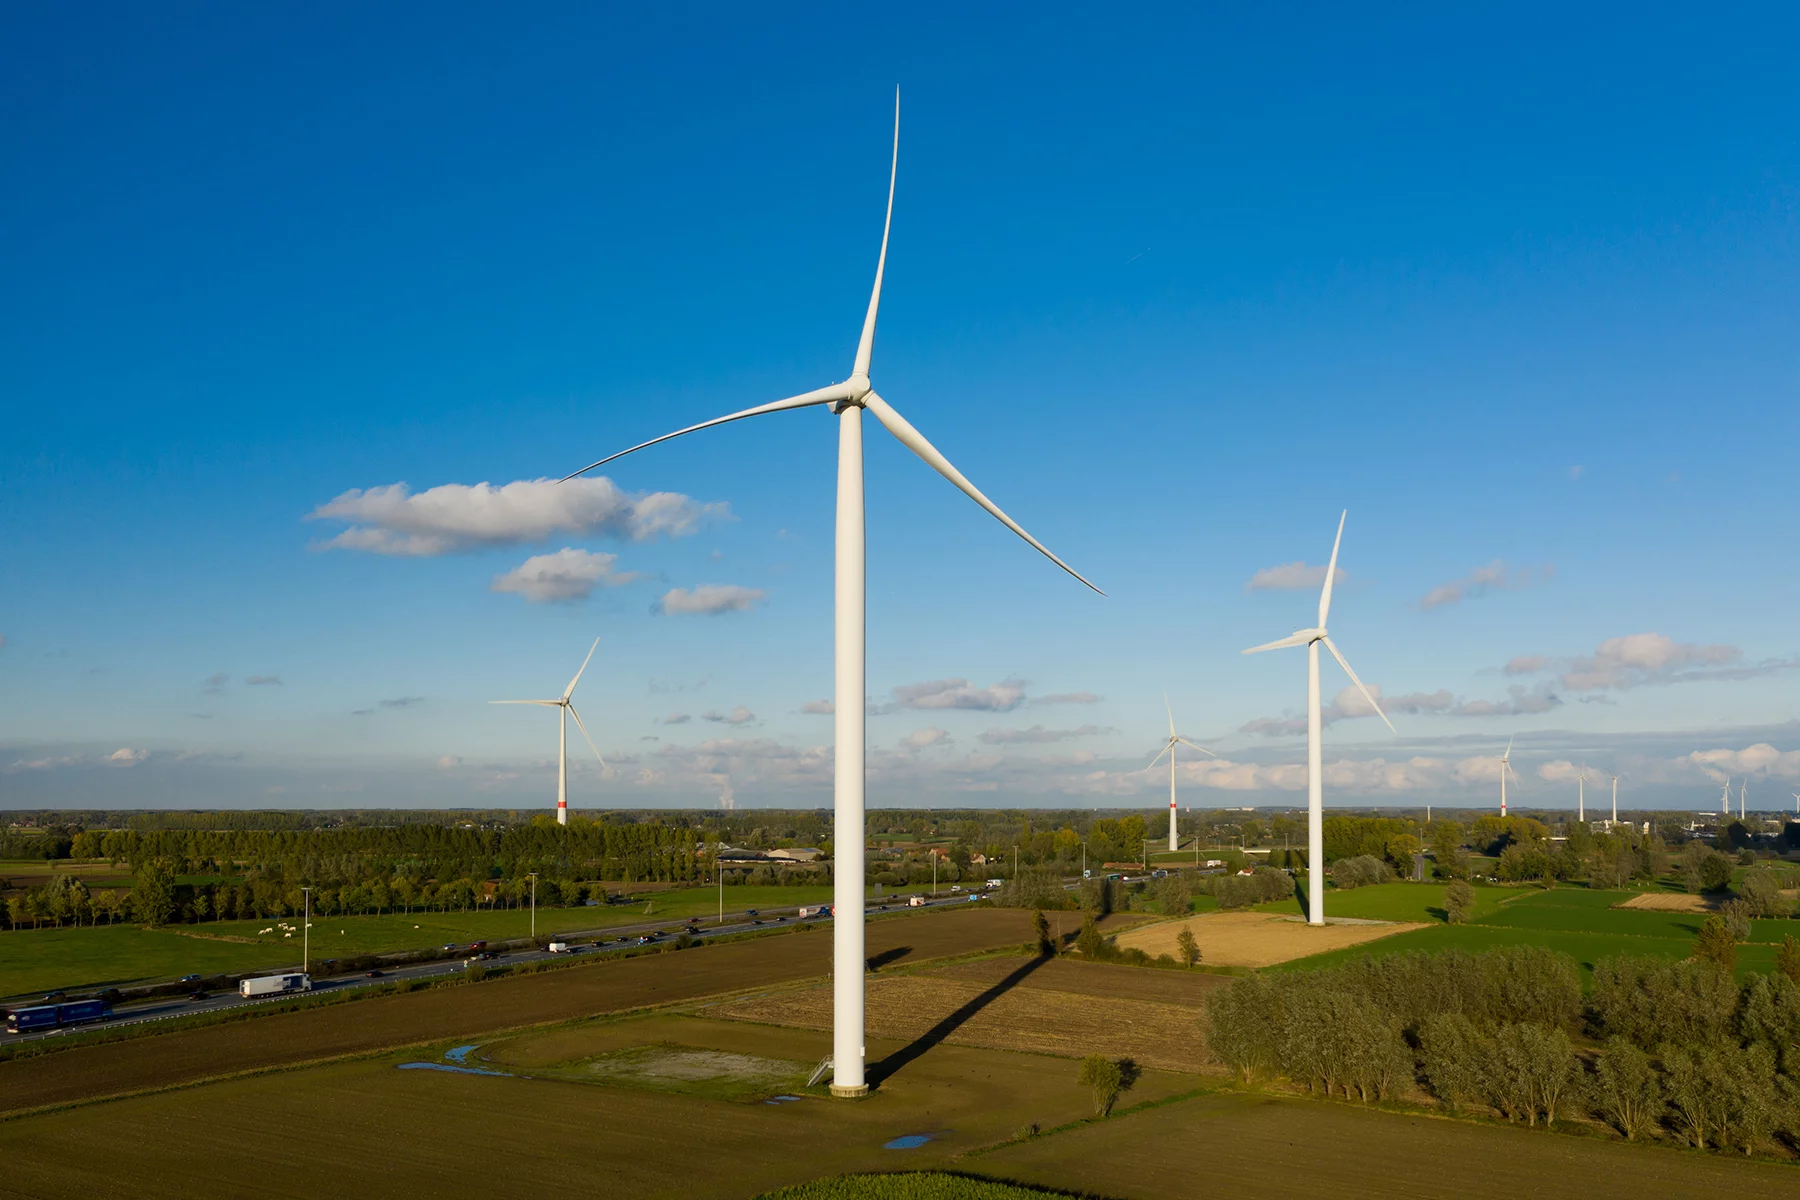 A wind farm in Belgium